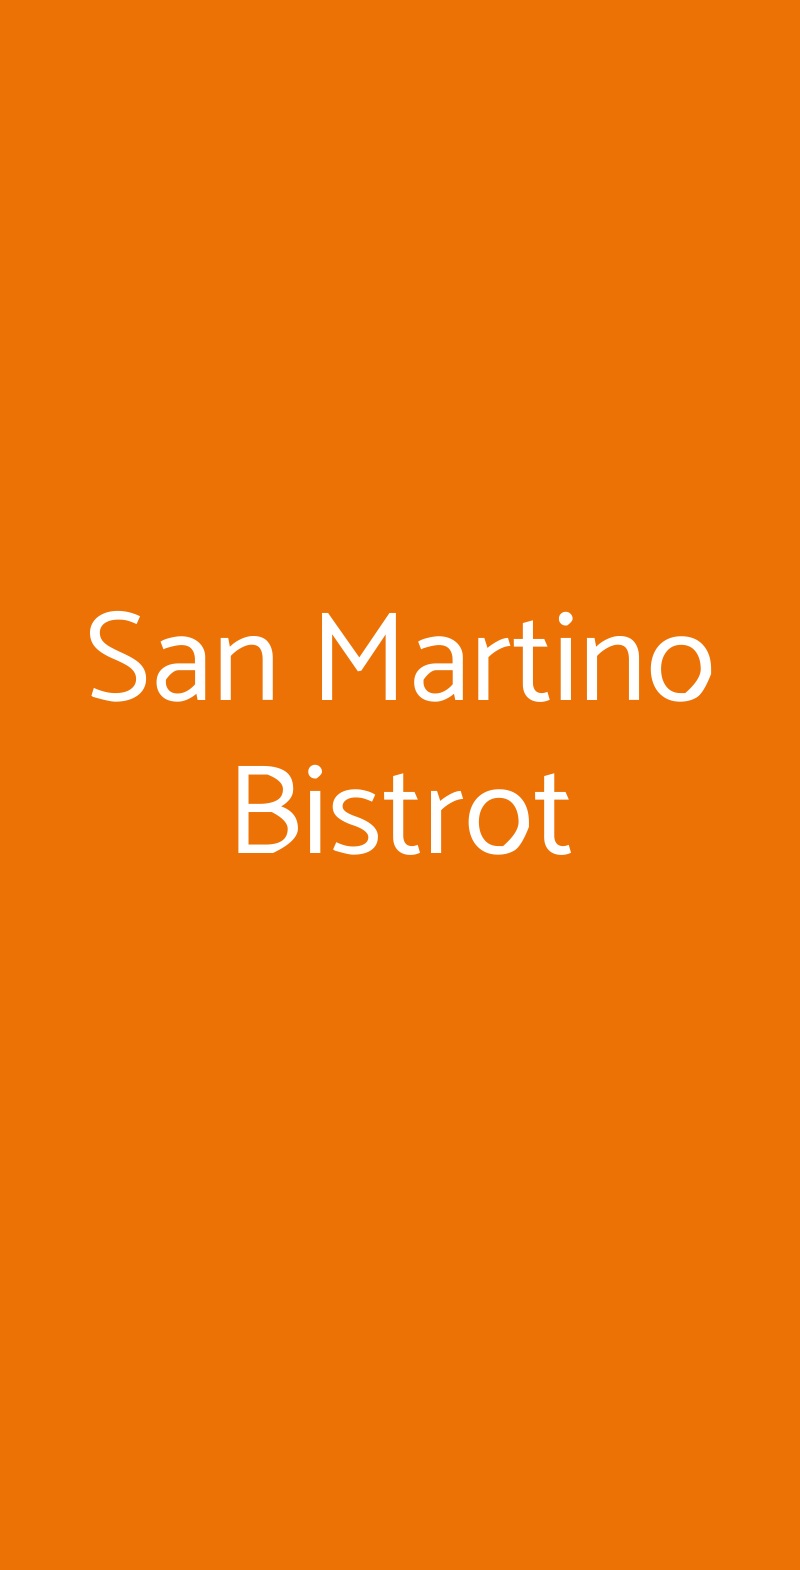 San Martino Bistrot Milano menù 1 pagina